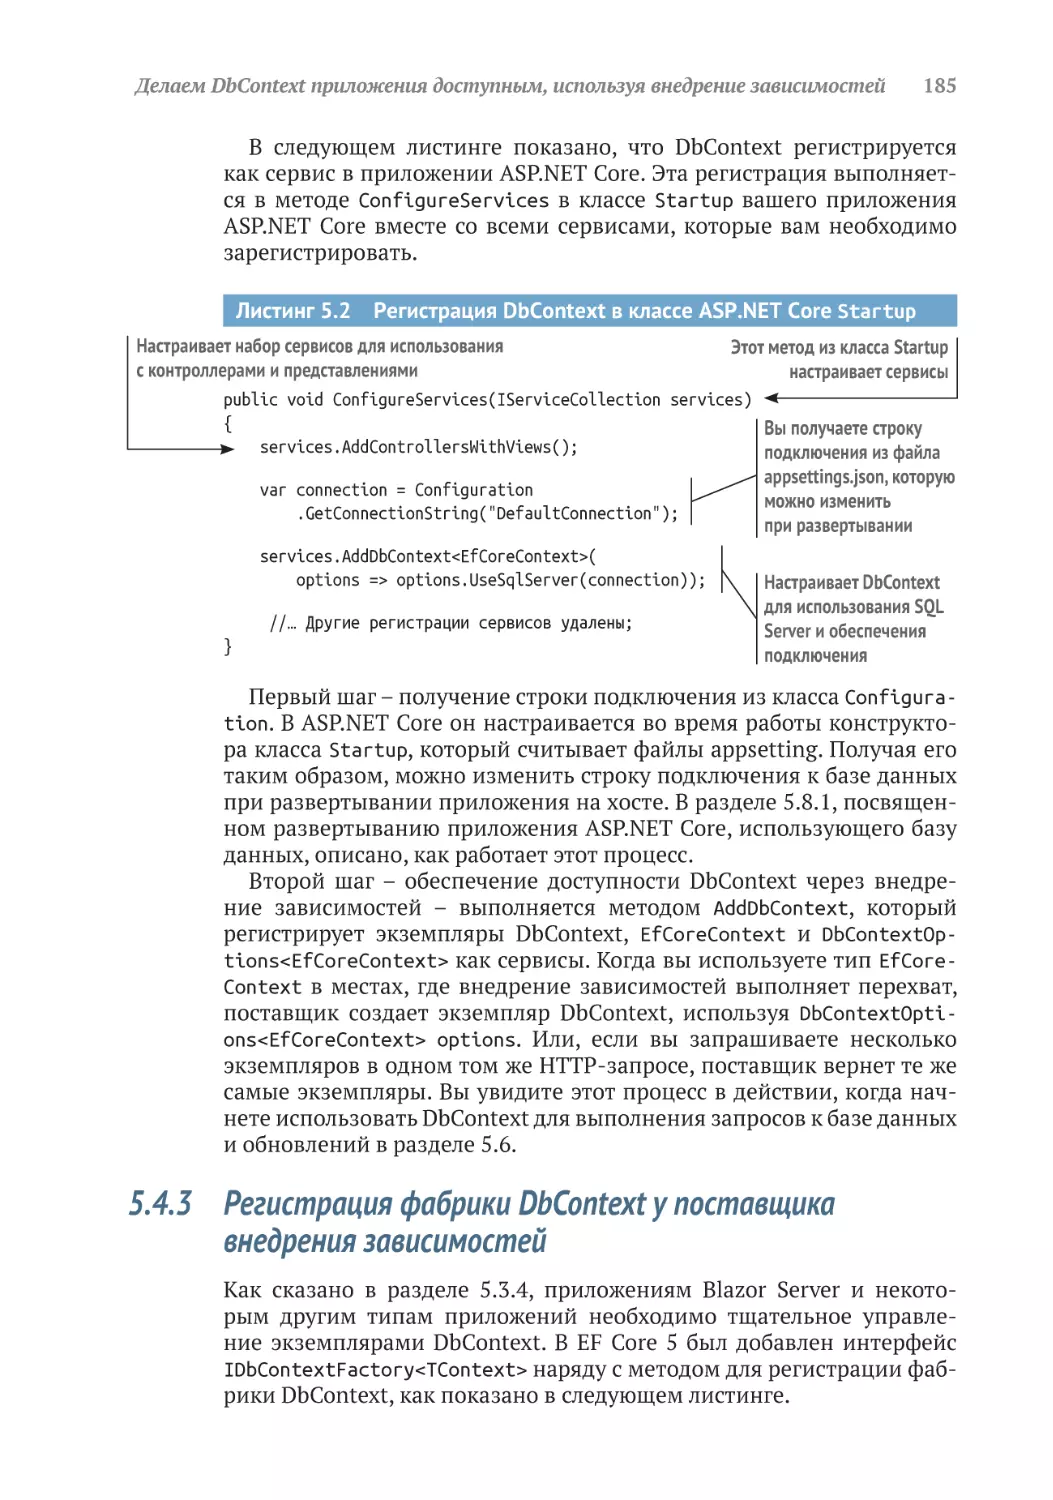 5.4.3	Регистрация фабрики DbContext у поставщика внедрения зависимостей